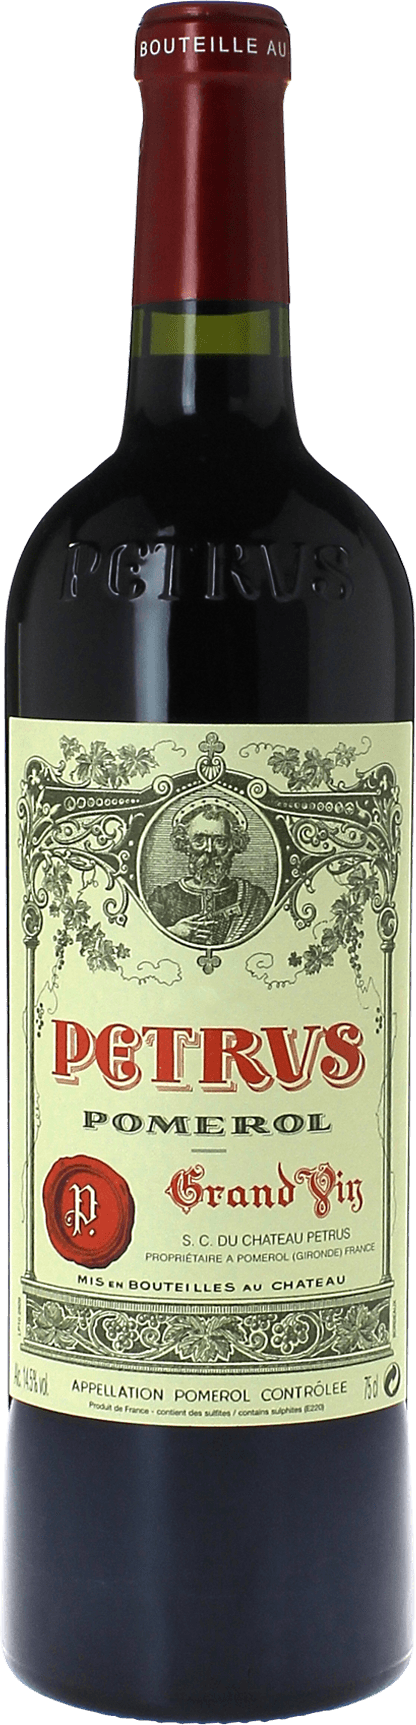 Petrus 2001  Pomerol, Bordeaux rouge